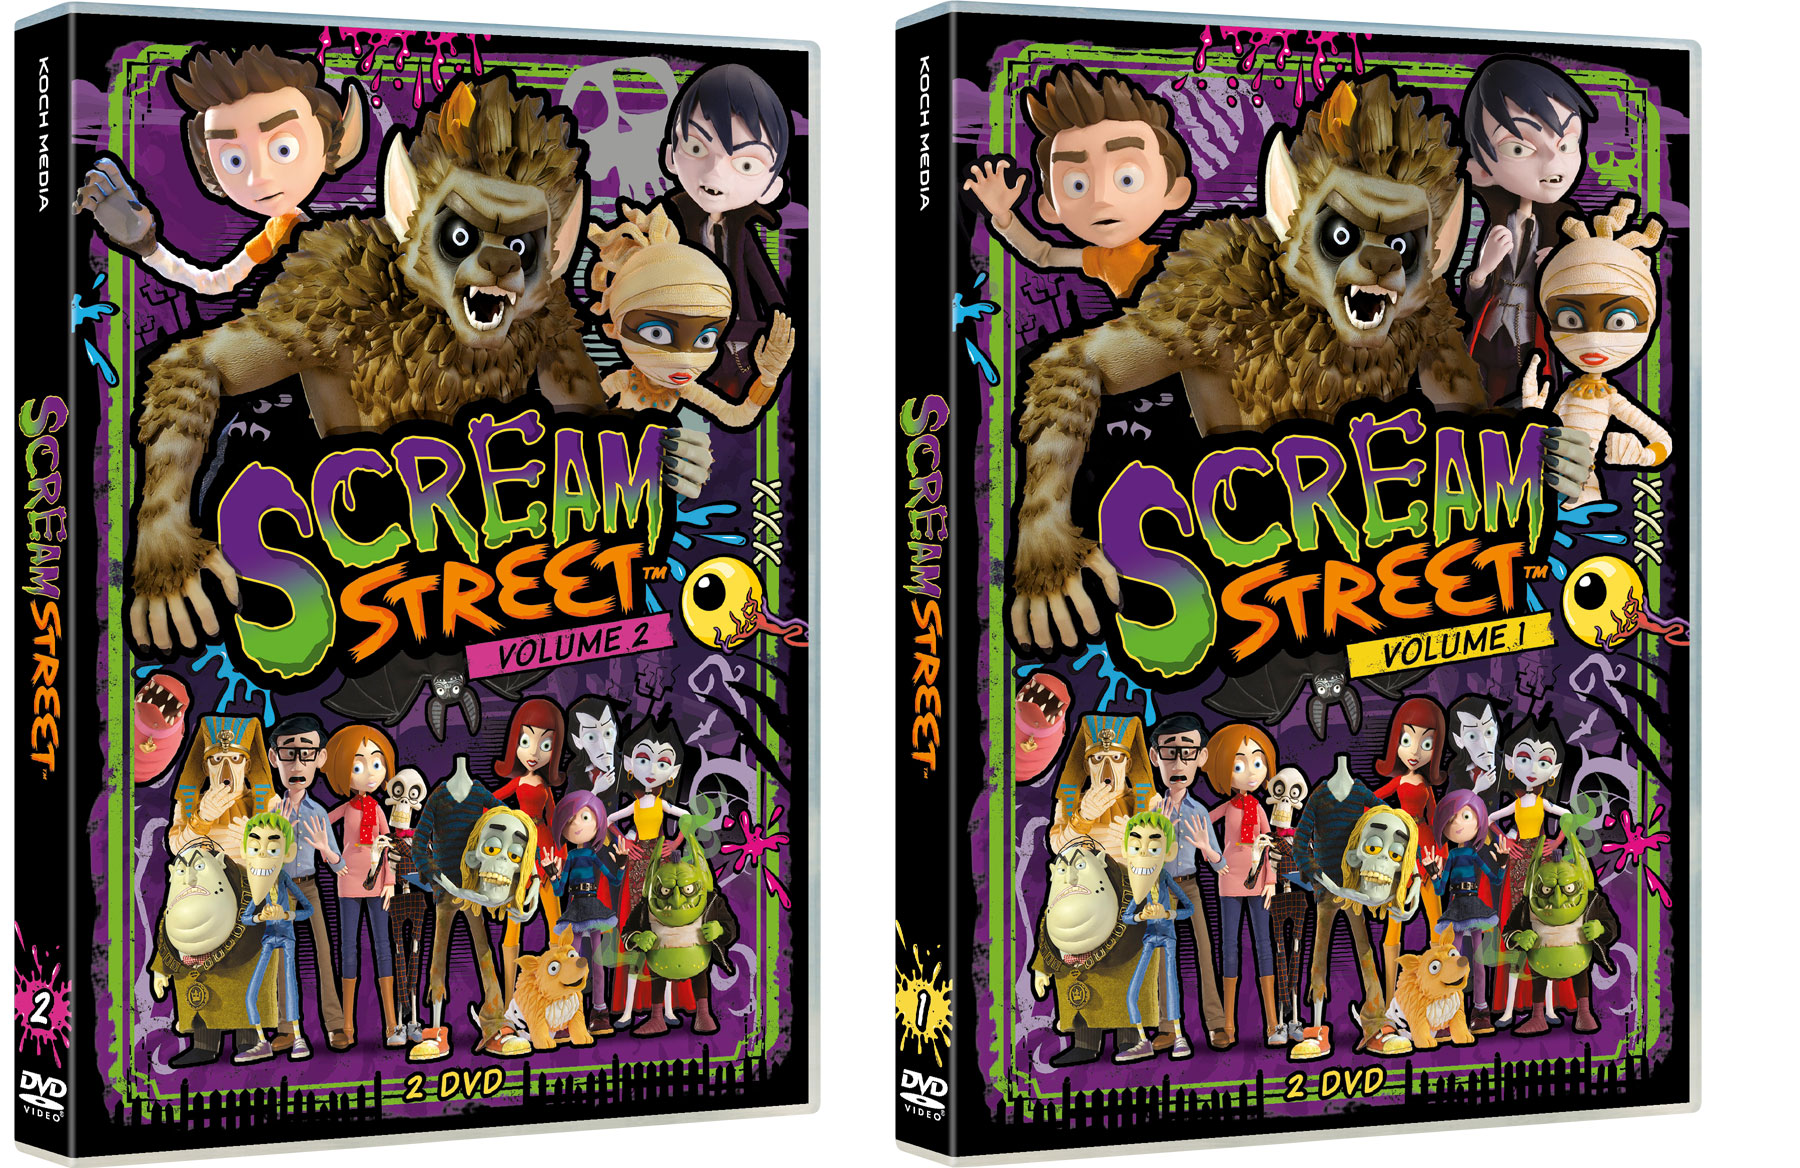 Scream Street Vol. 1-2 in DVD